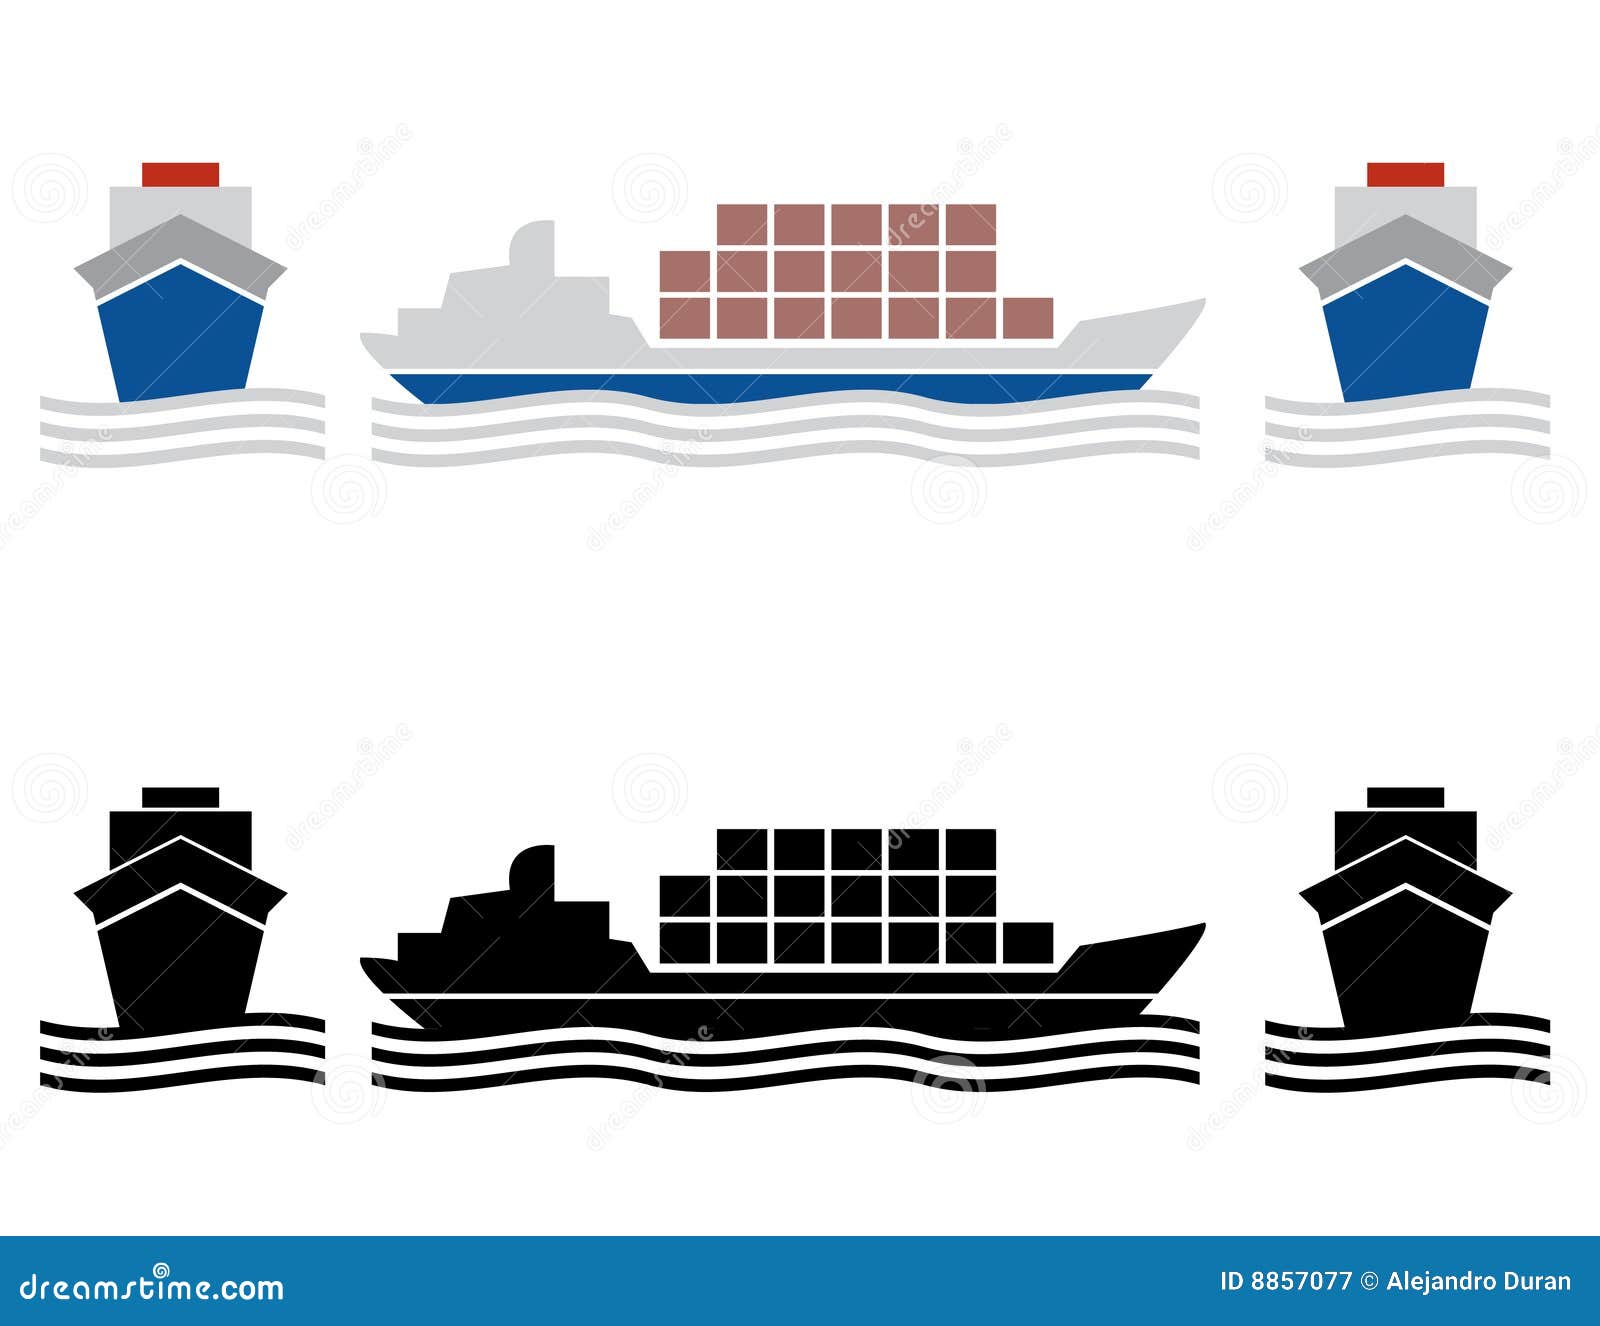 ship cargo icons